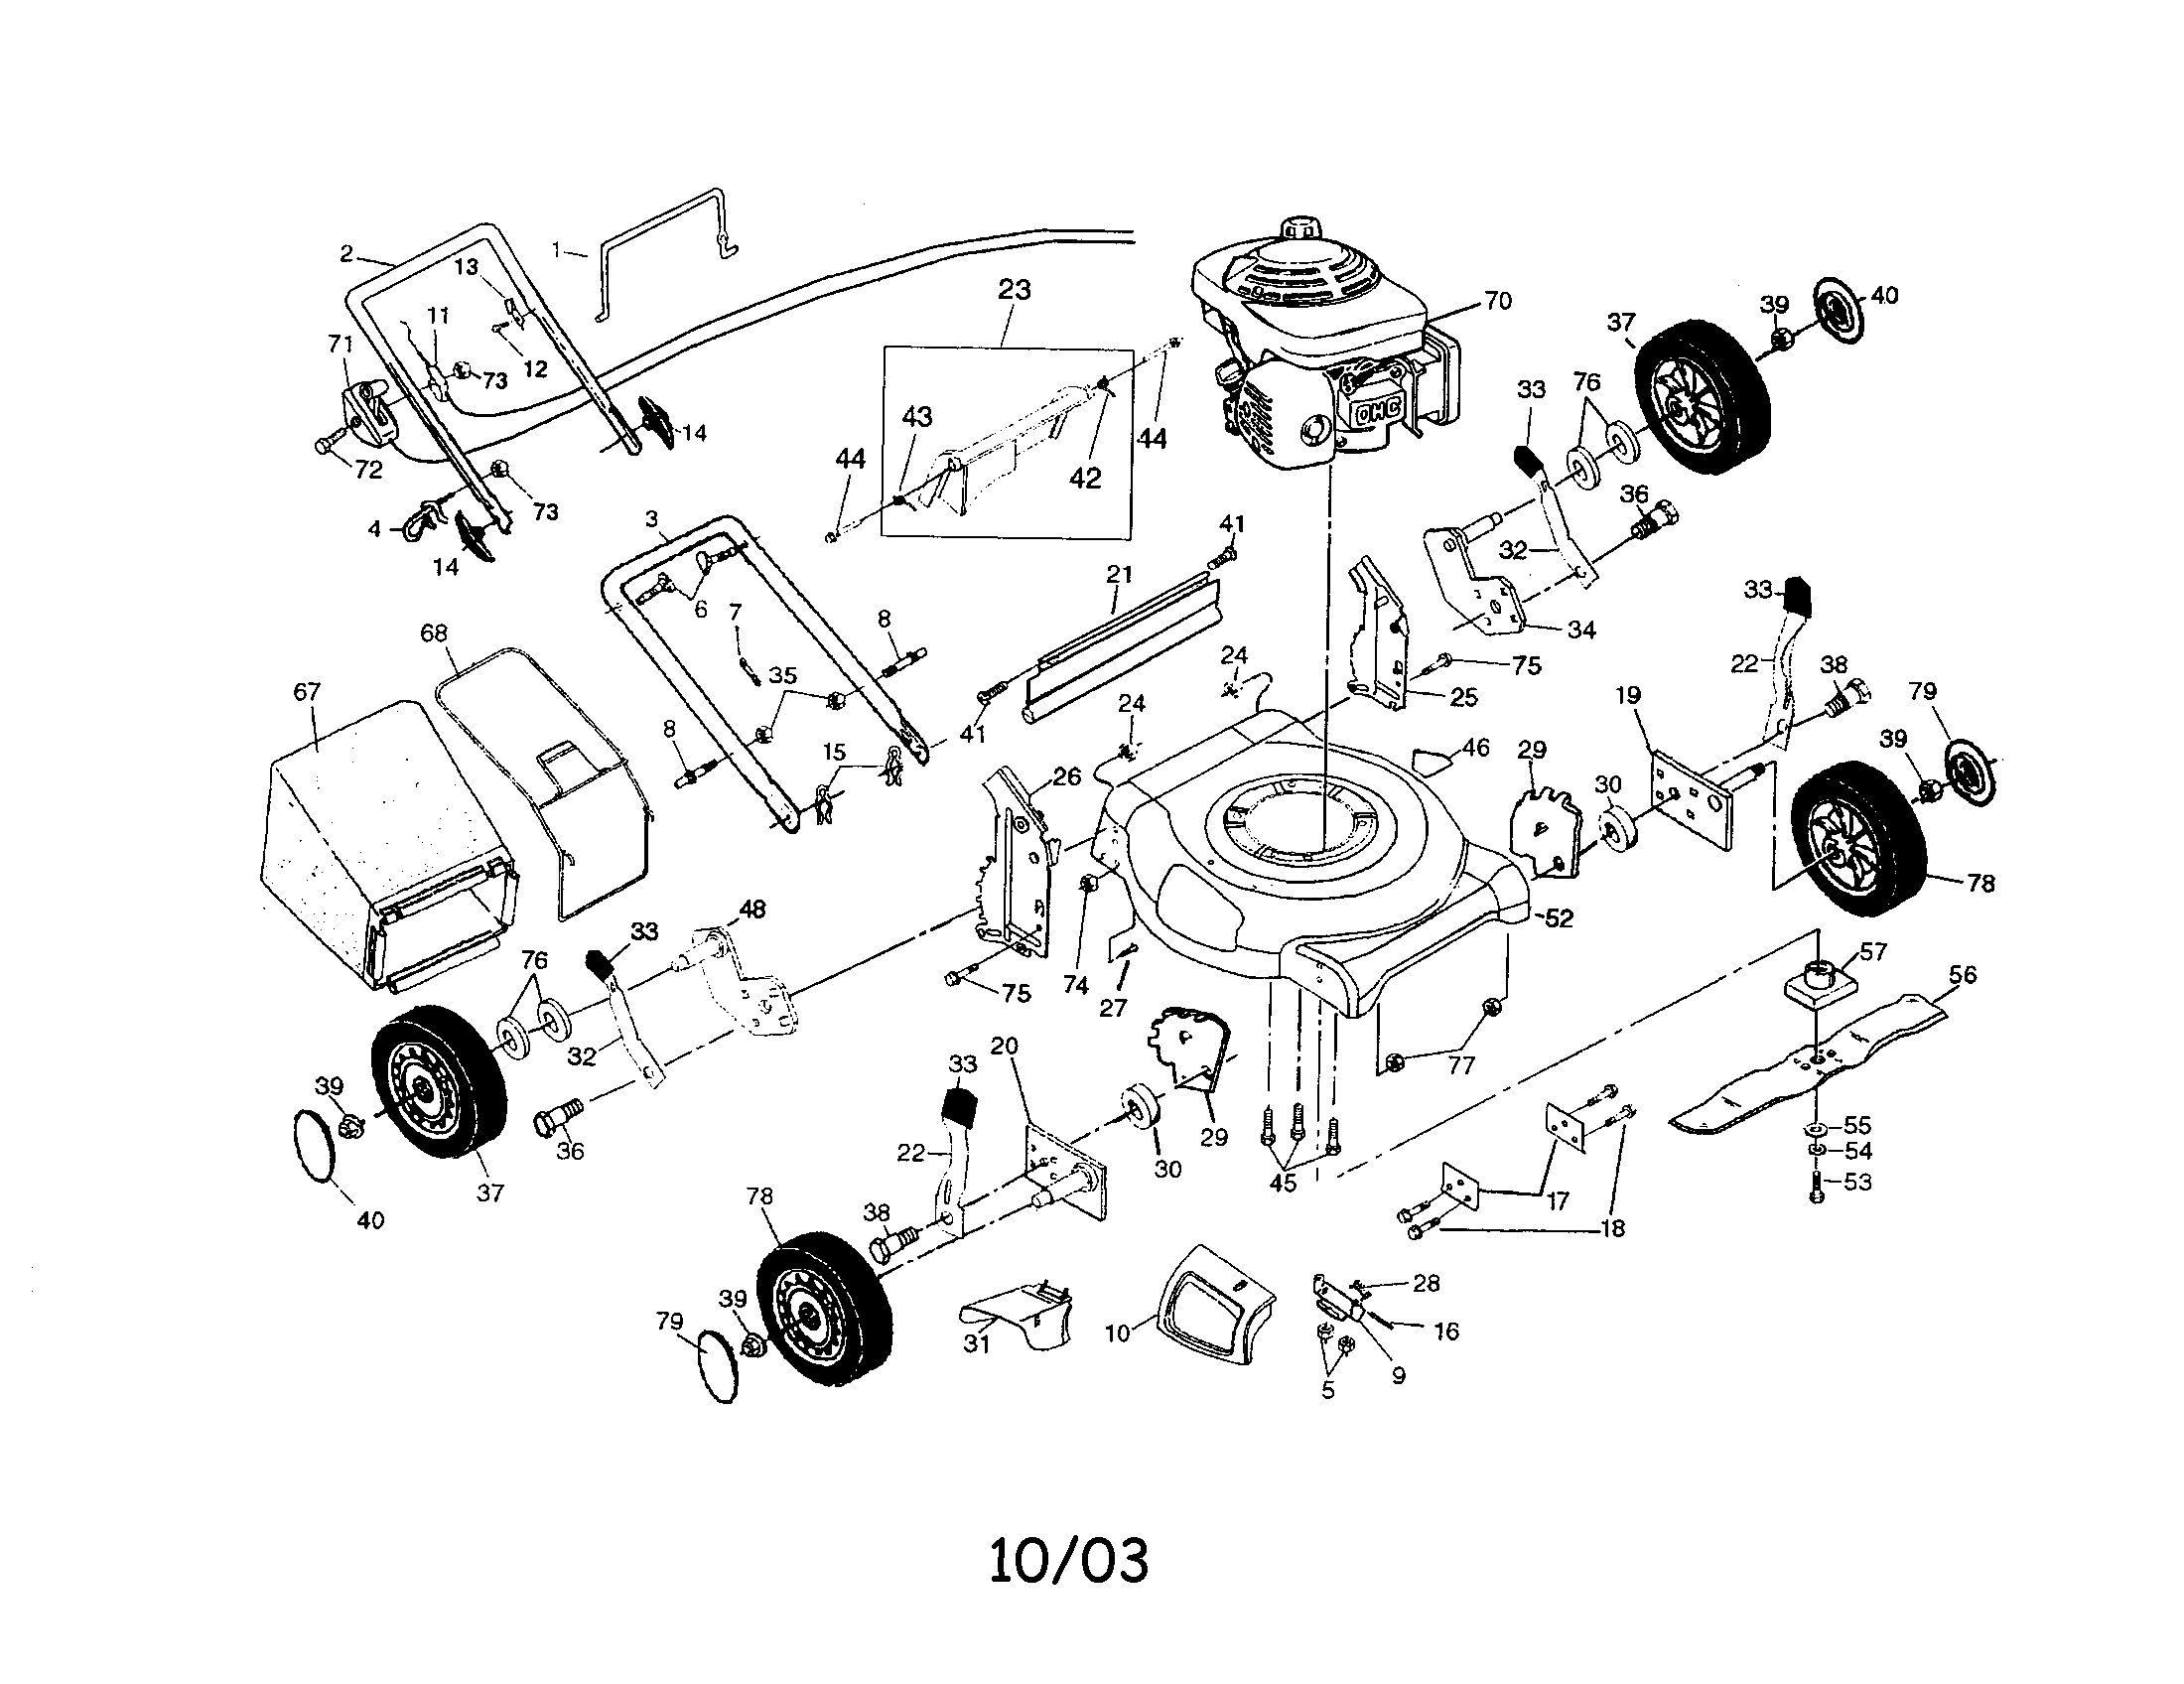 Honda gcv160 ignition problem #4